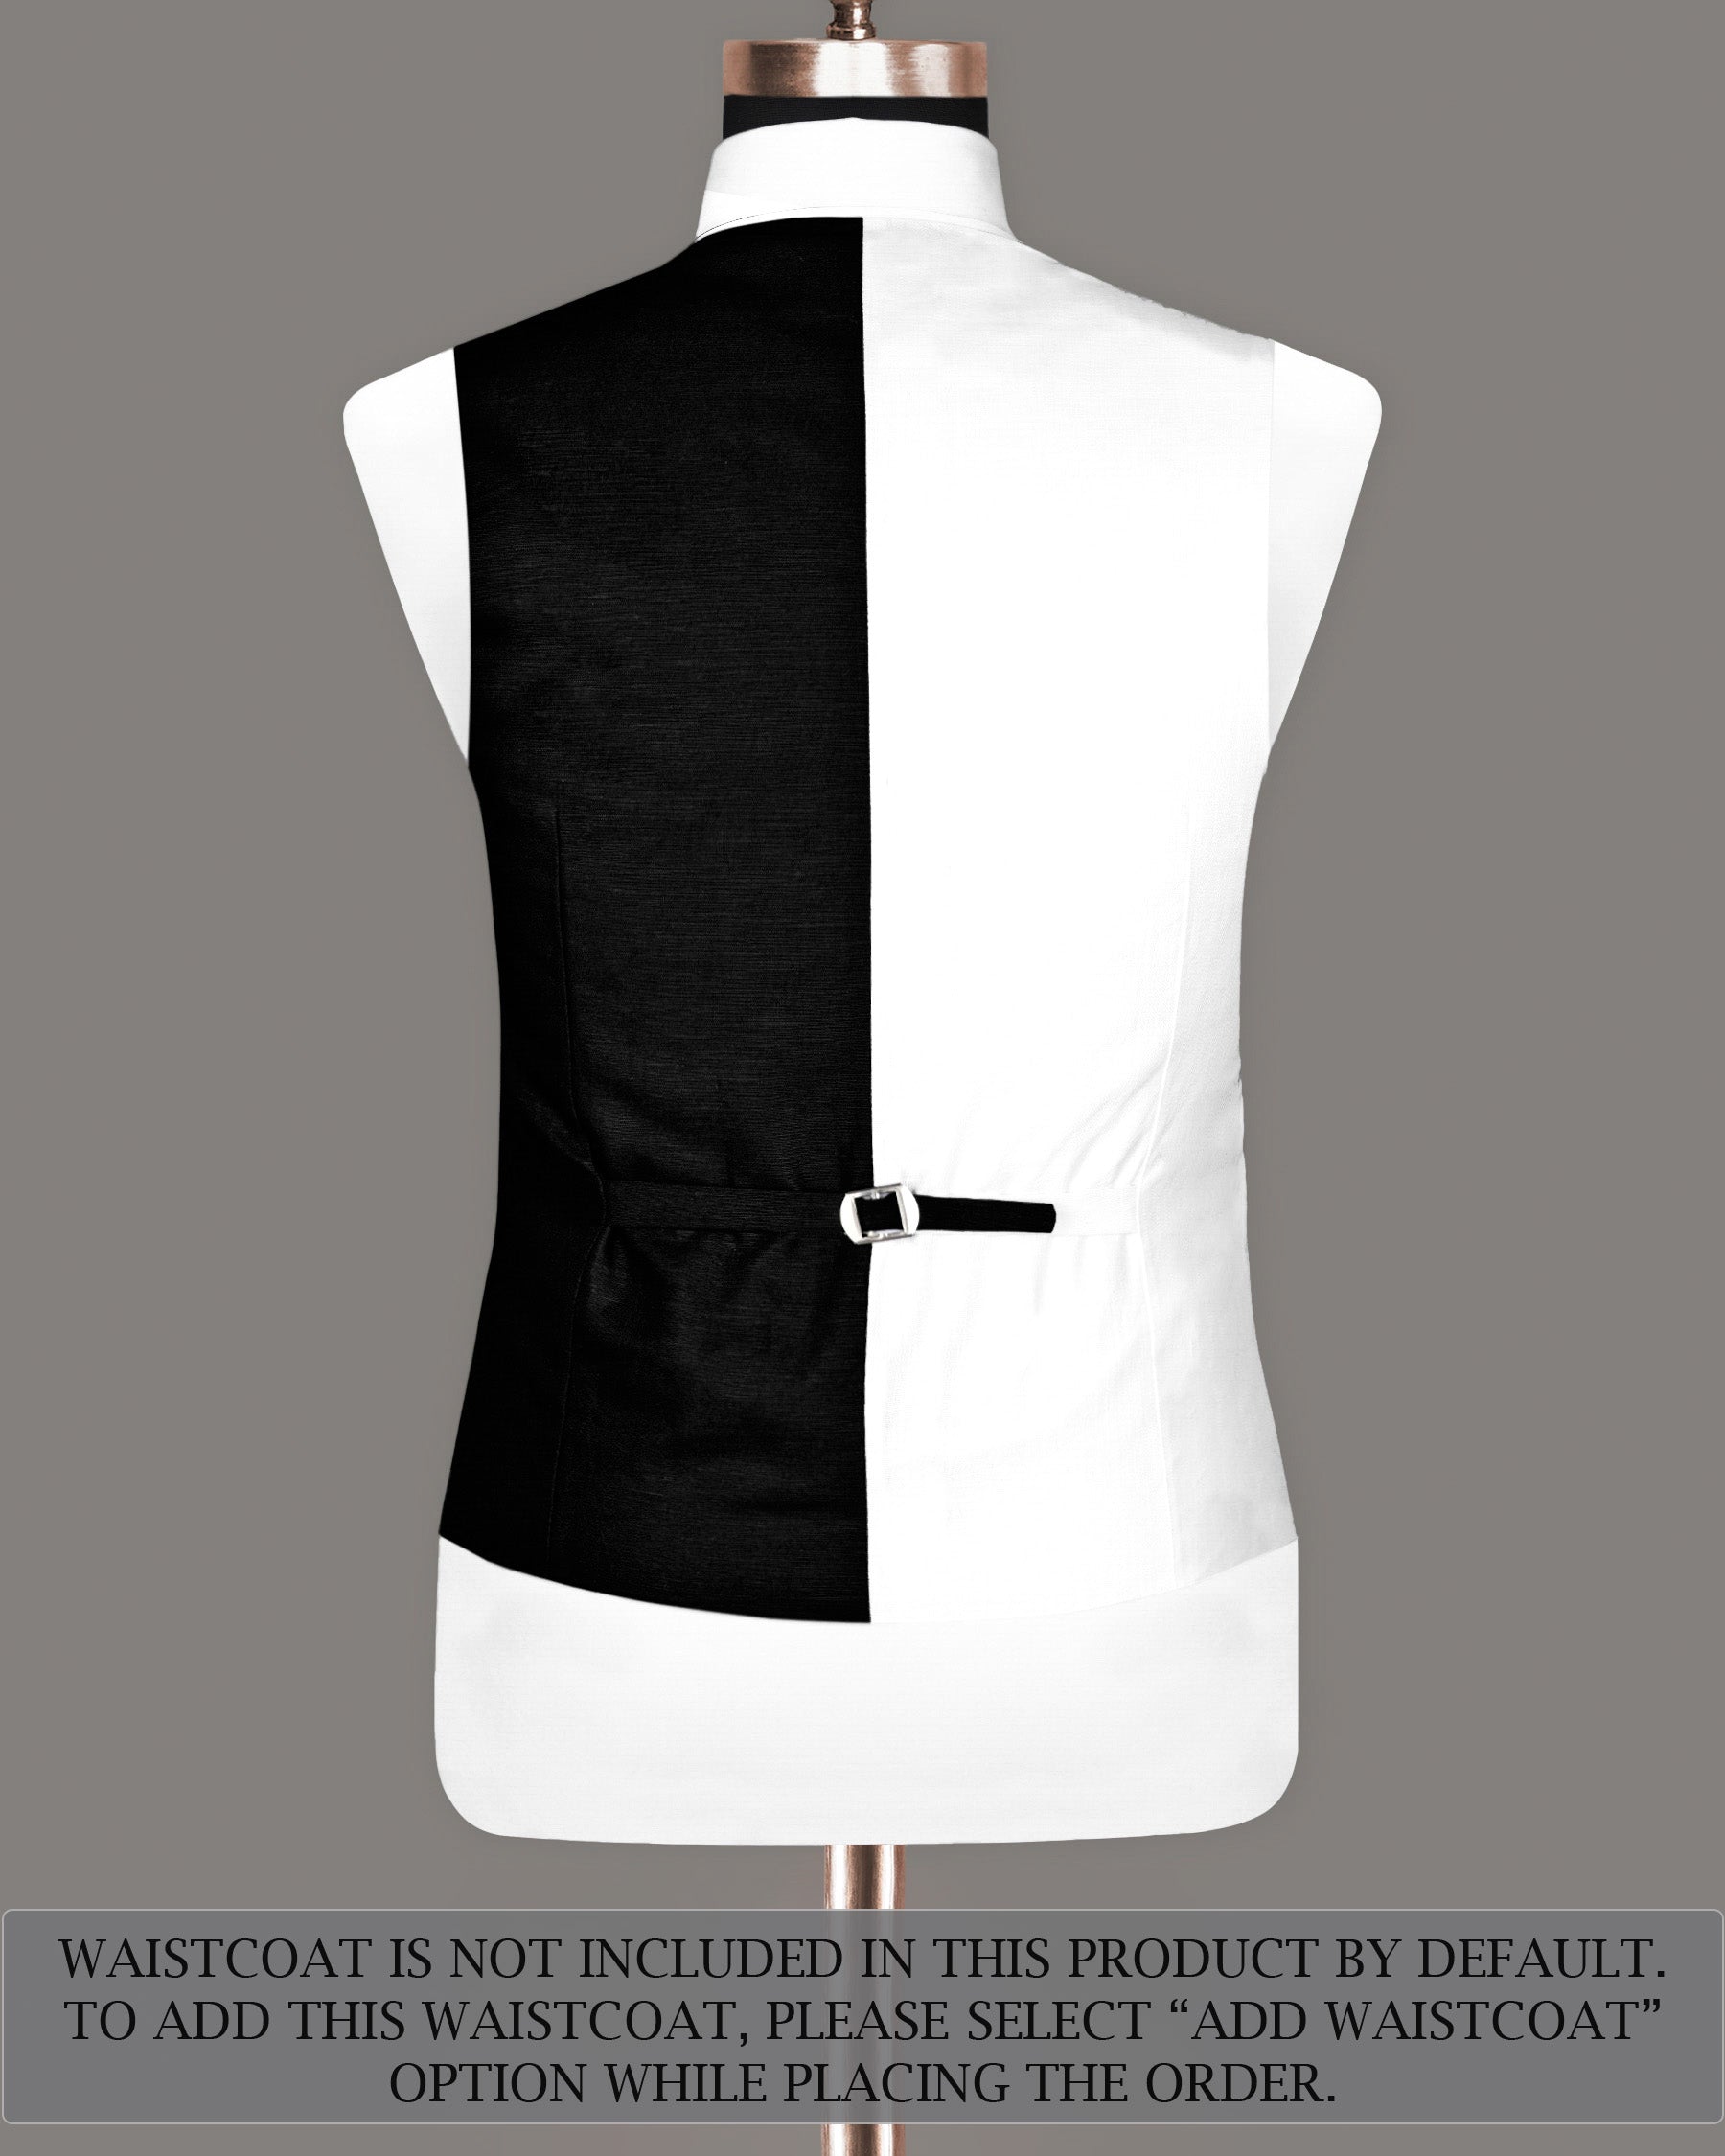 Black & White Luxurious Linen Suit